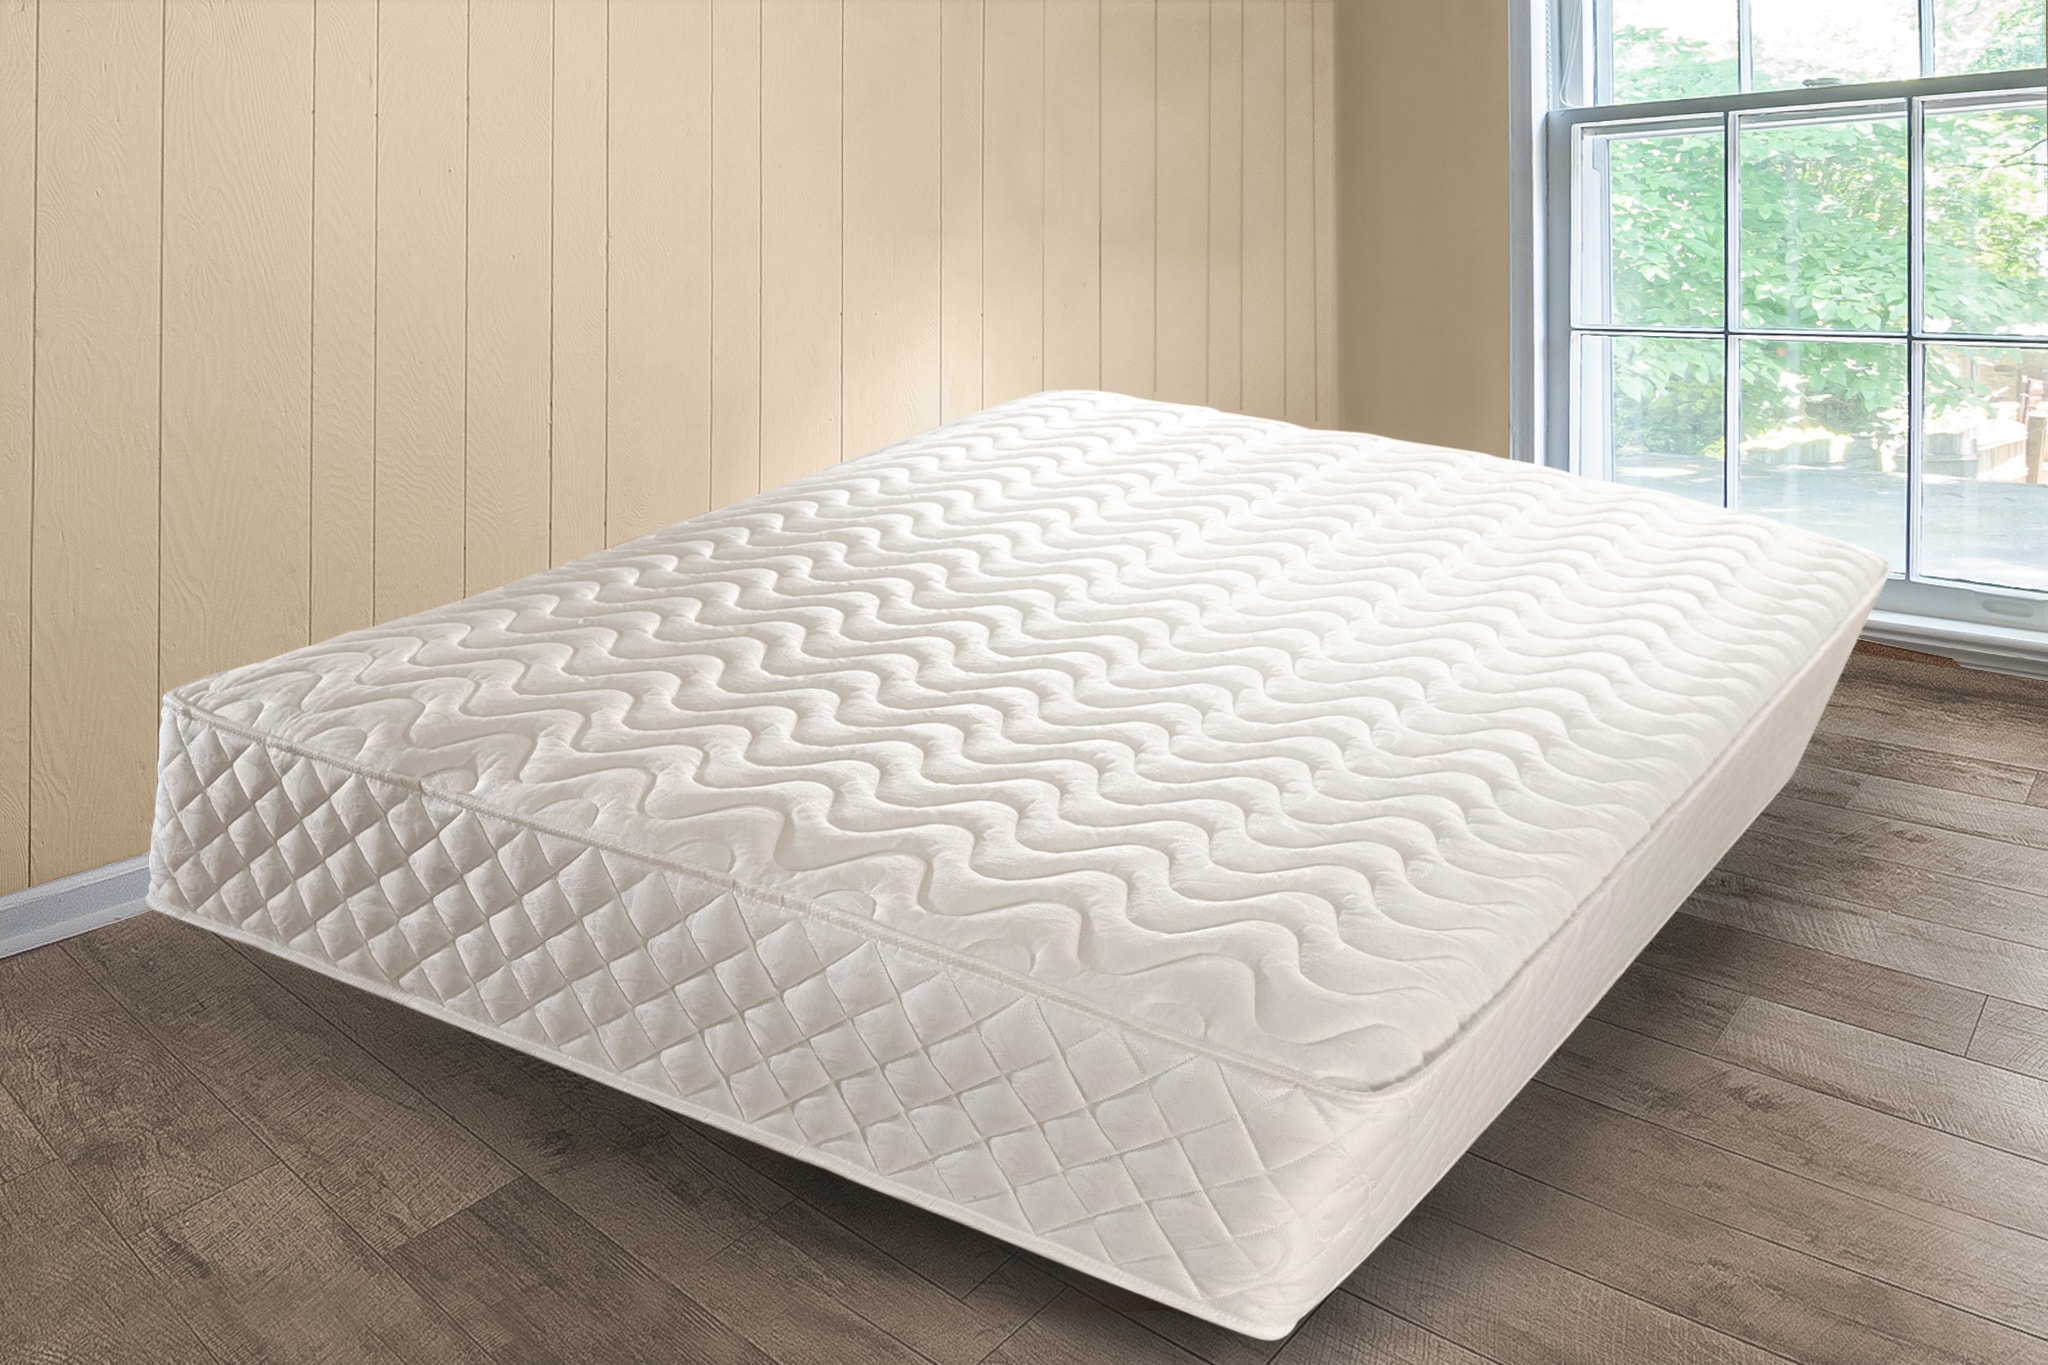 double sided memory foam mattress